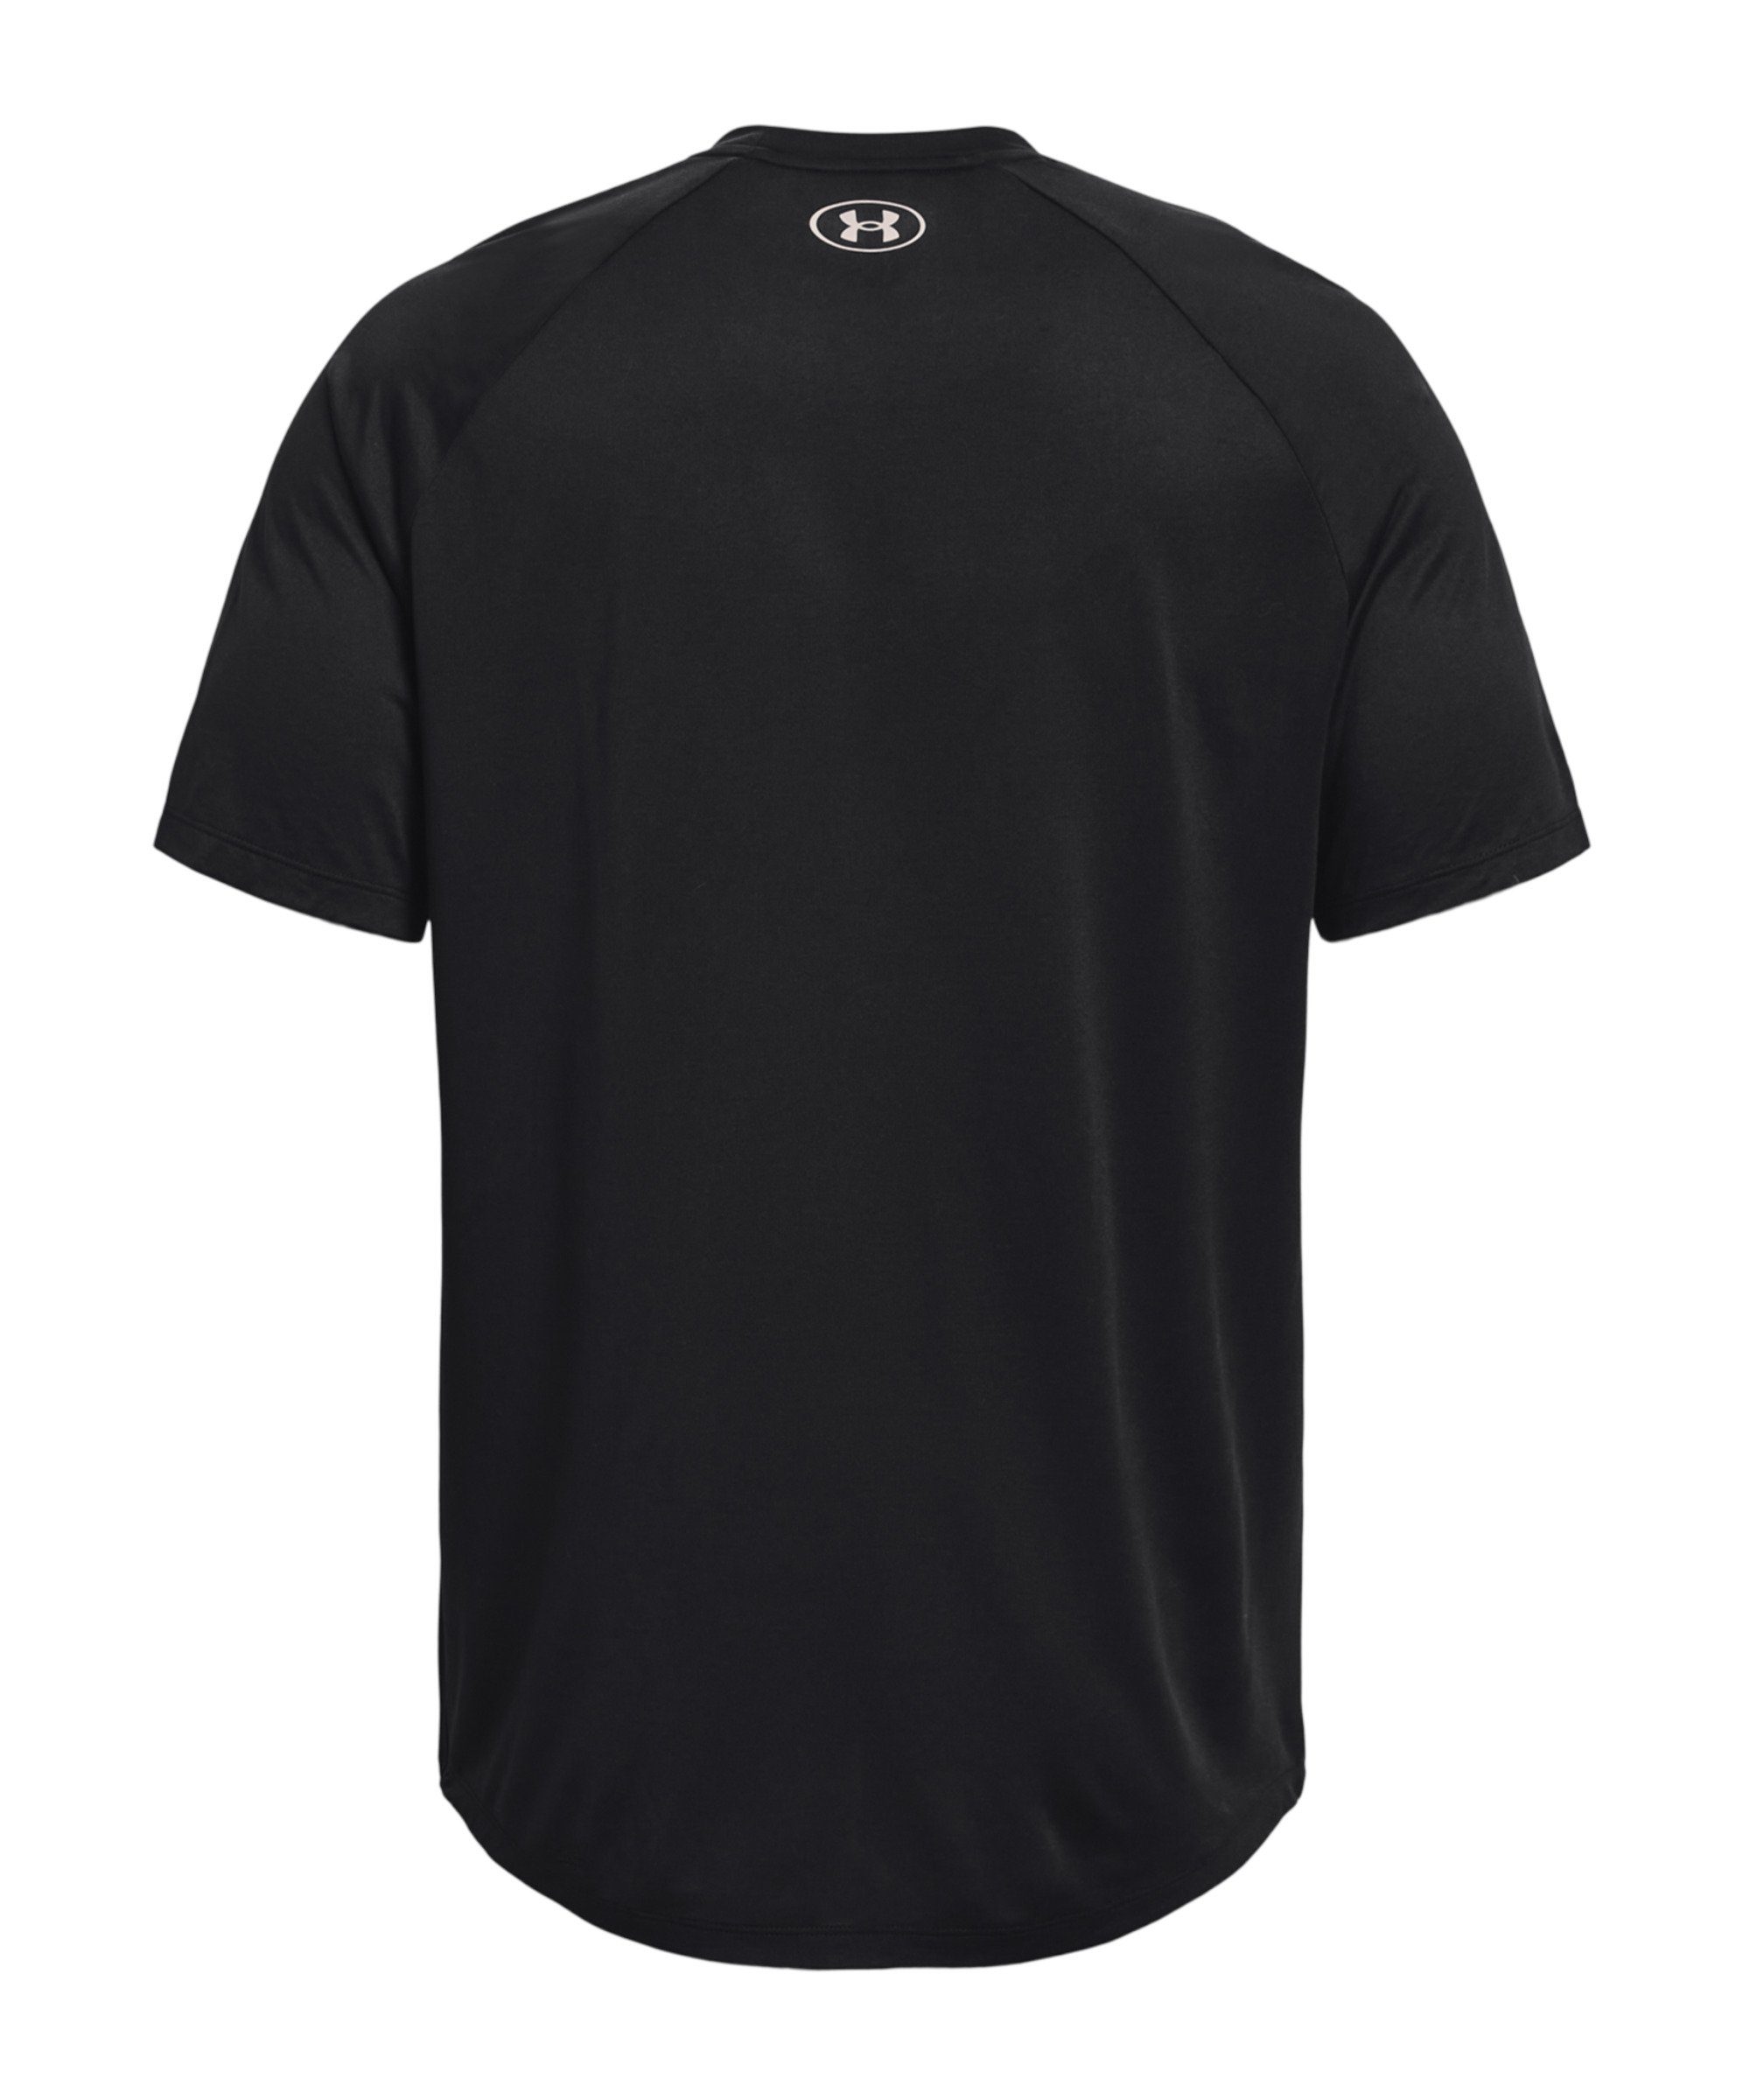 Under schwarz 2.0 Tech Armour® T-Shirt default Gradient T-Shirt